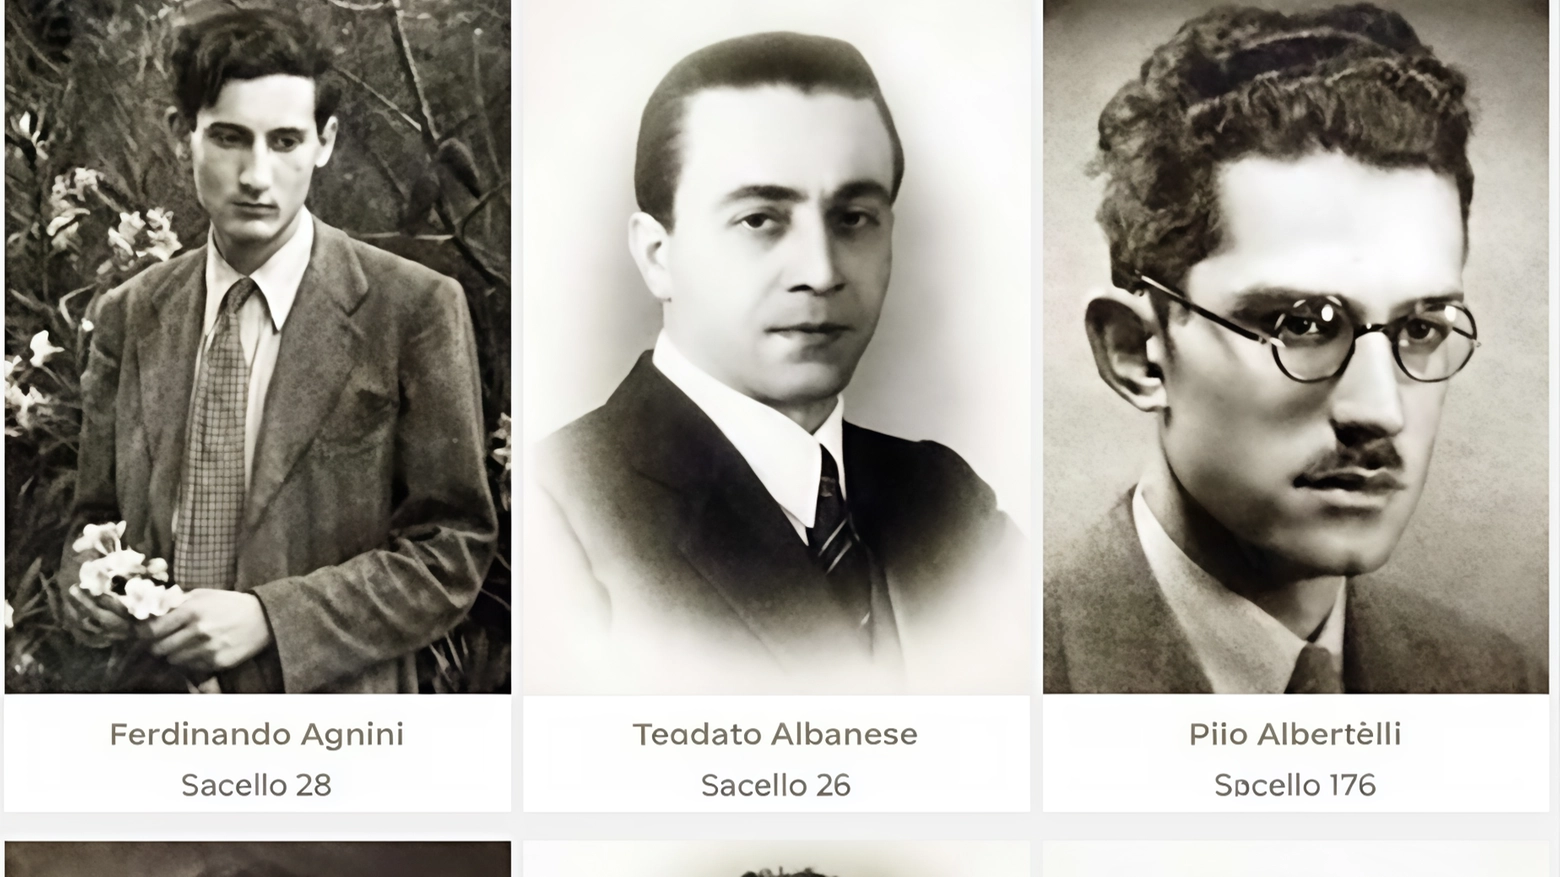 Il libro "Le vite spezzate della Fosse Ardeatine" racconta le storie di 335 cittadini uccisi durante la rappresaglia nazista del 24 marzo 1944, tra cui Ferdinando Agnini e Augusto Zironi, giovani attivi nella resistenza.